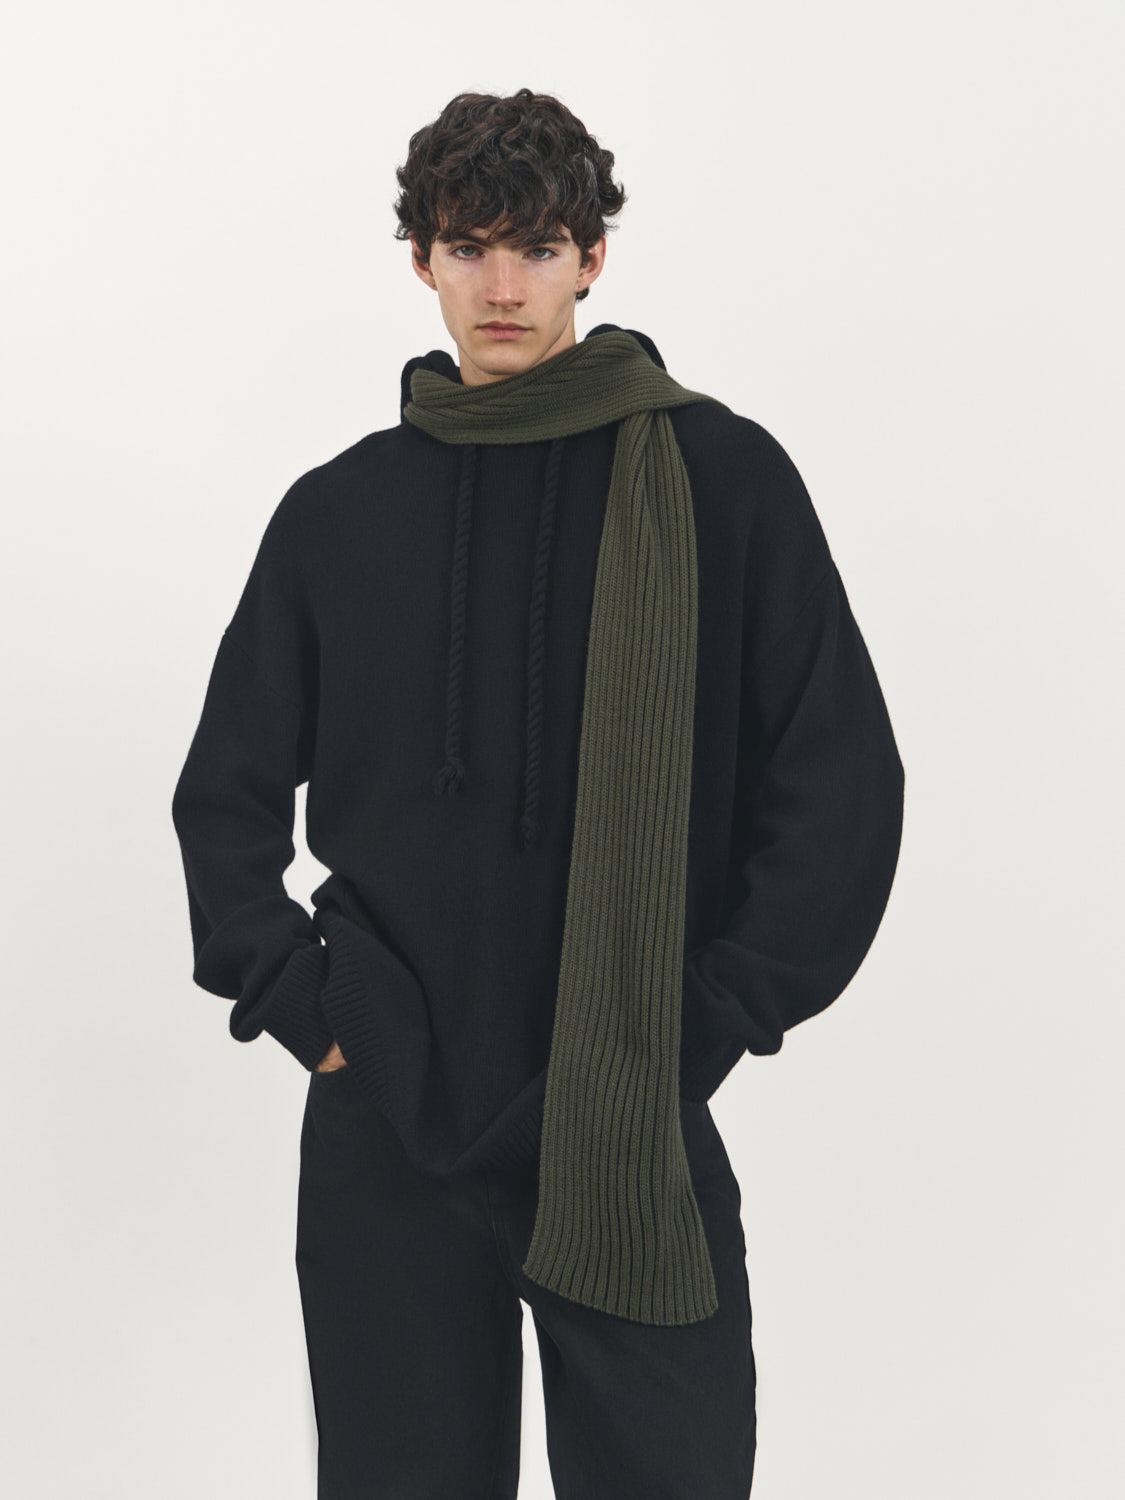 Женские шарфы из шерсти — купить в интернет-магазине Ламода